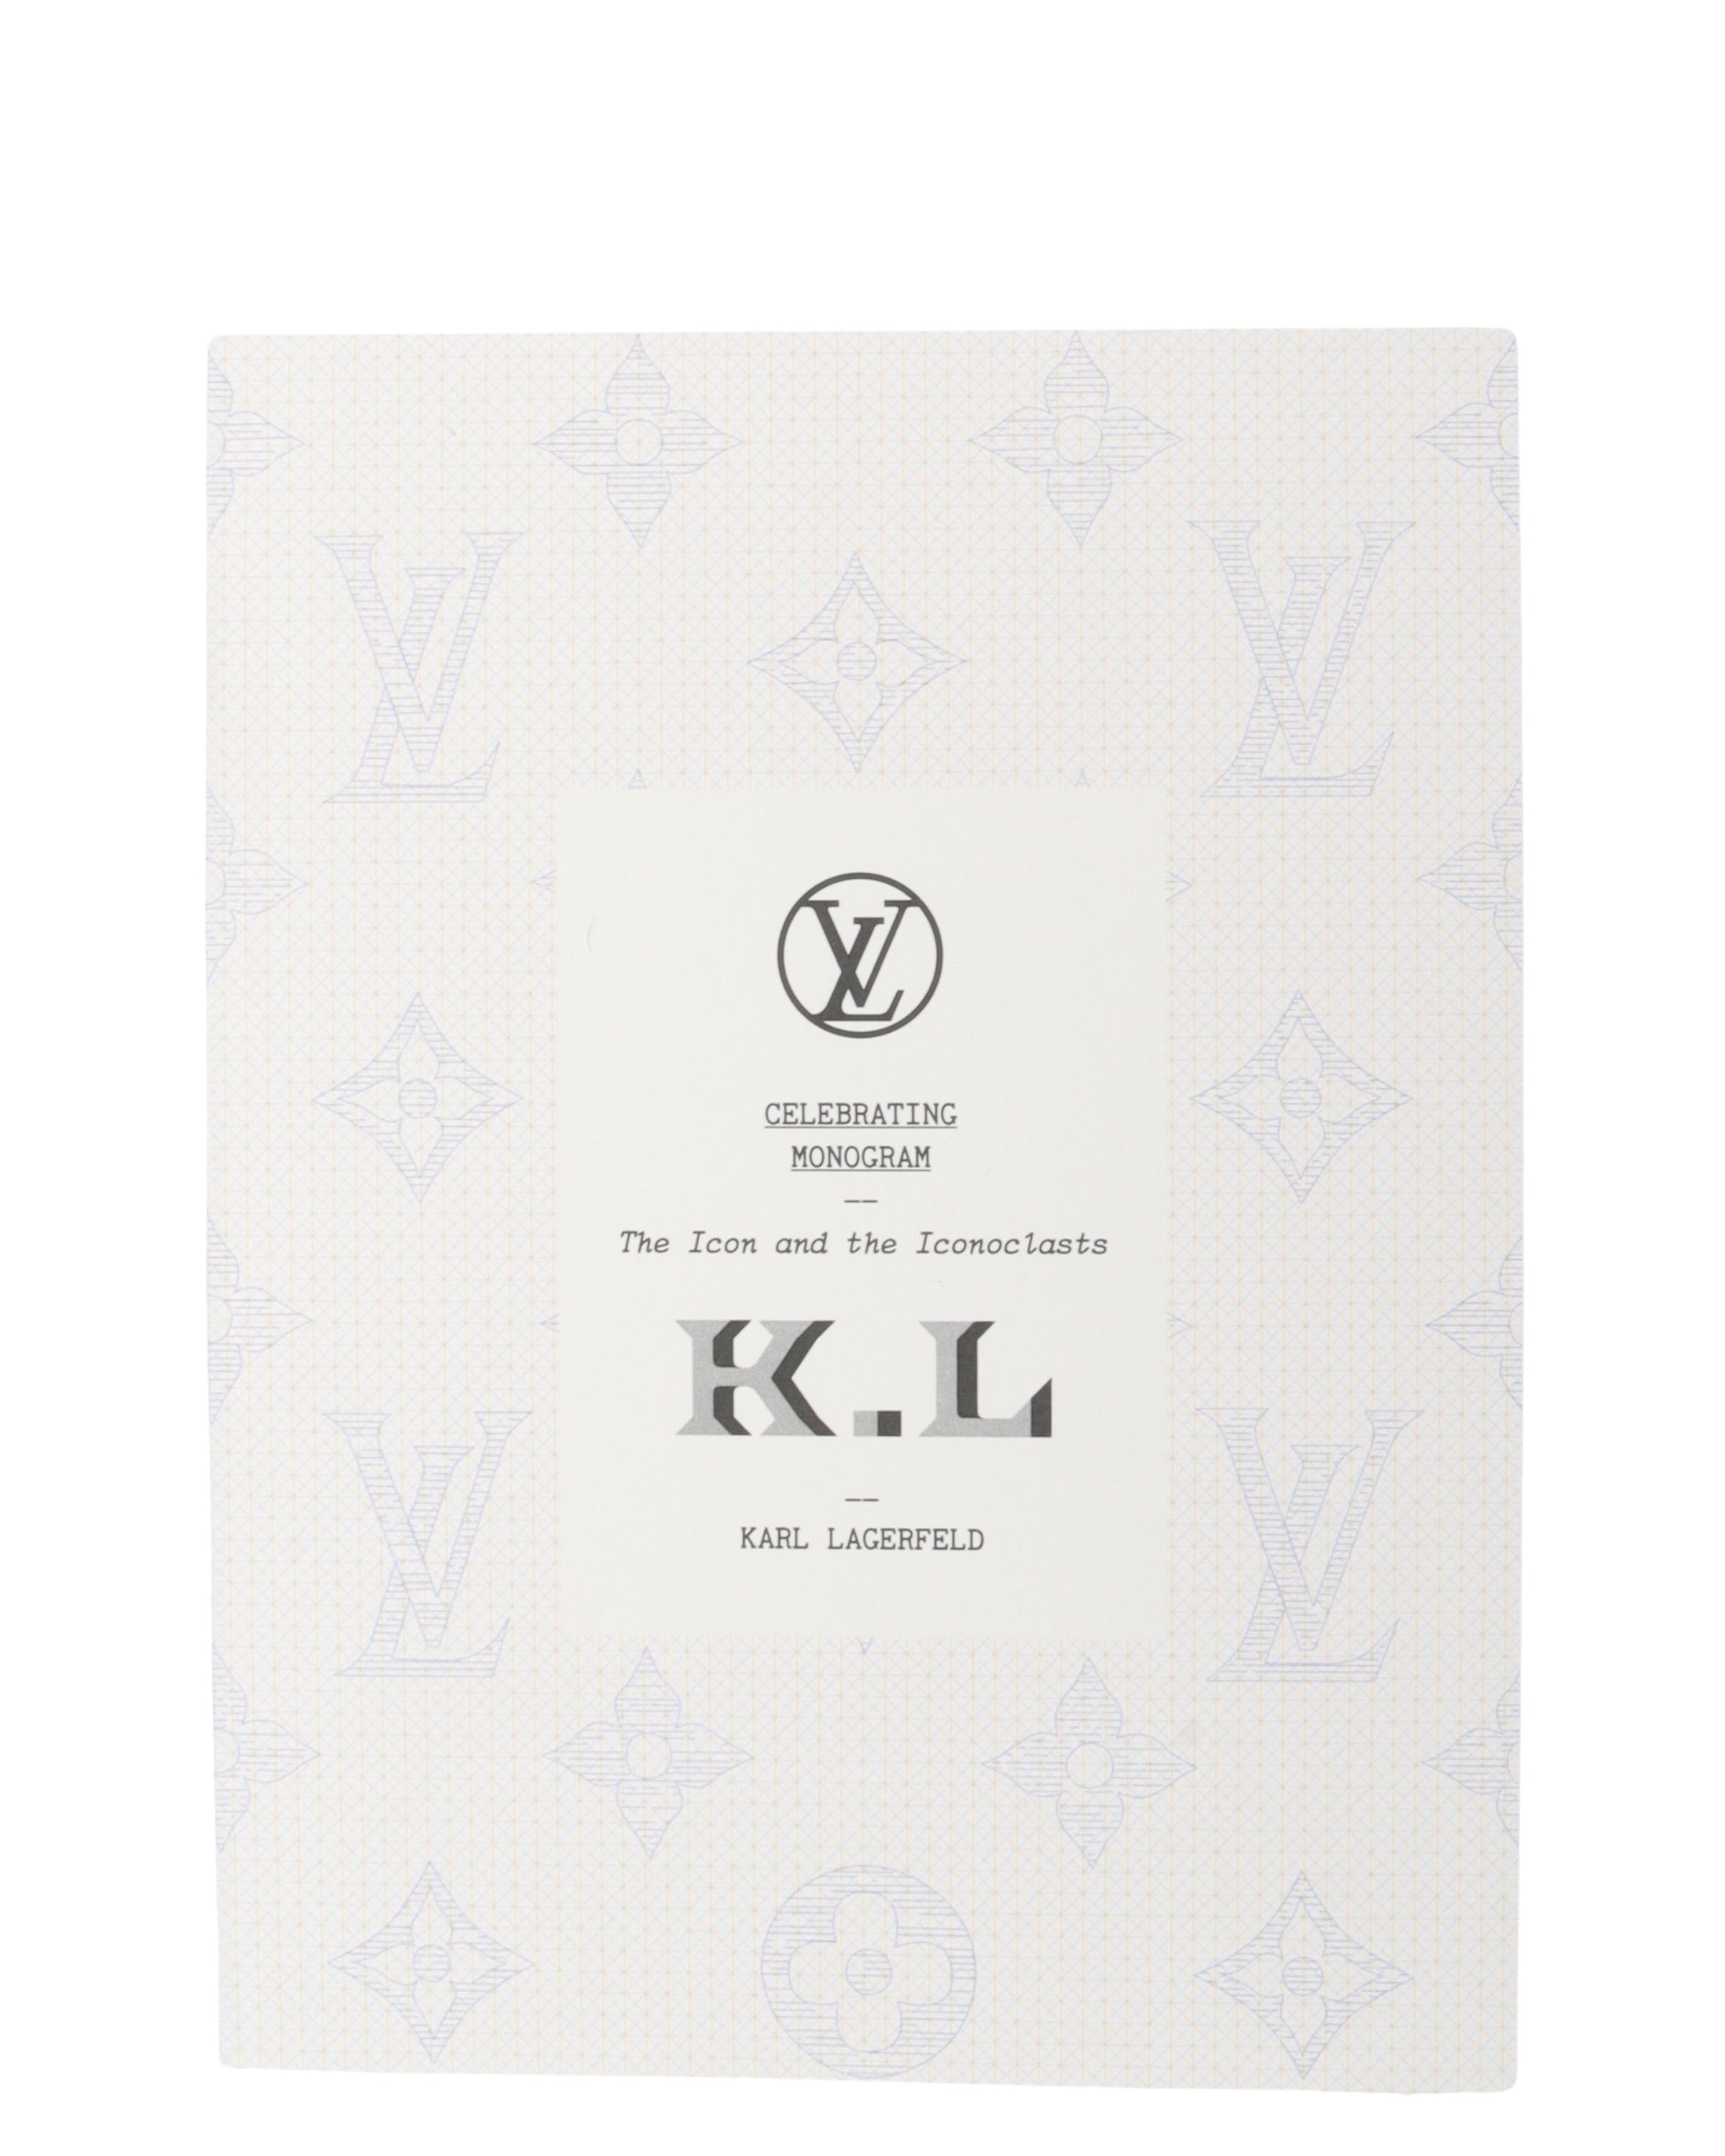 Louis Vuitton Monogram Boxing Gloves & Bag, Karl Lagerfeld, 2014